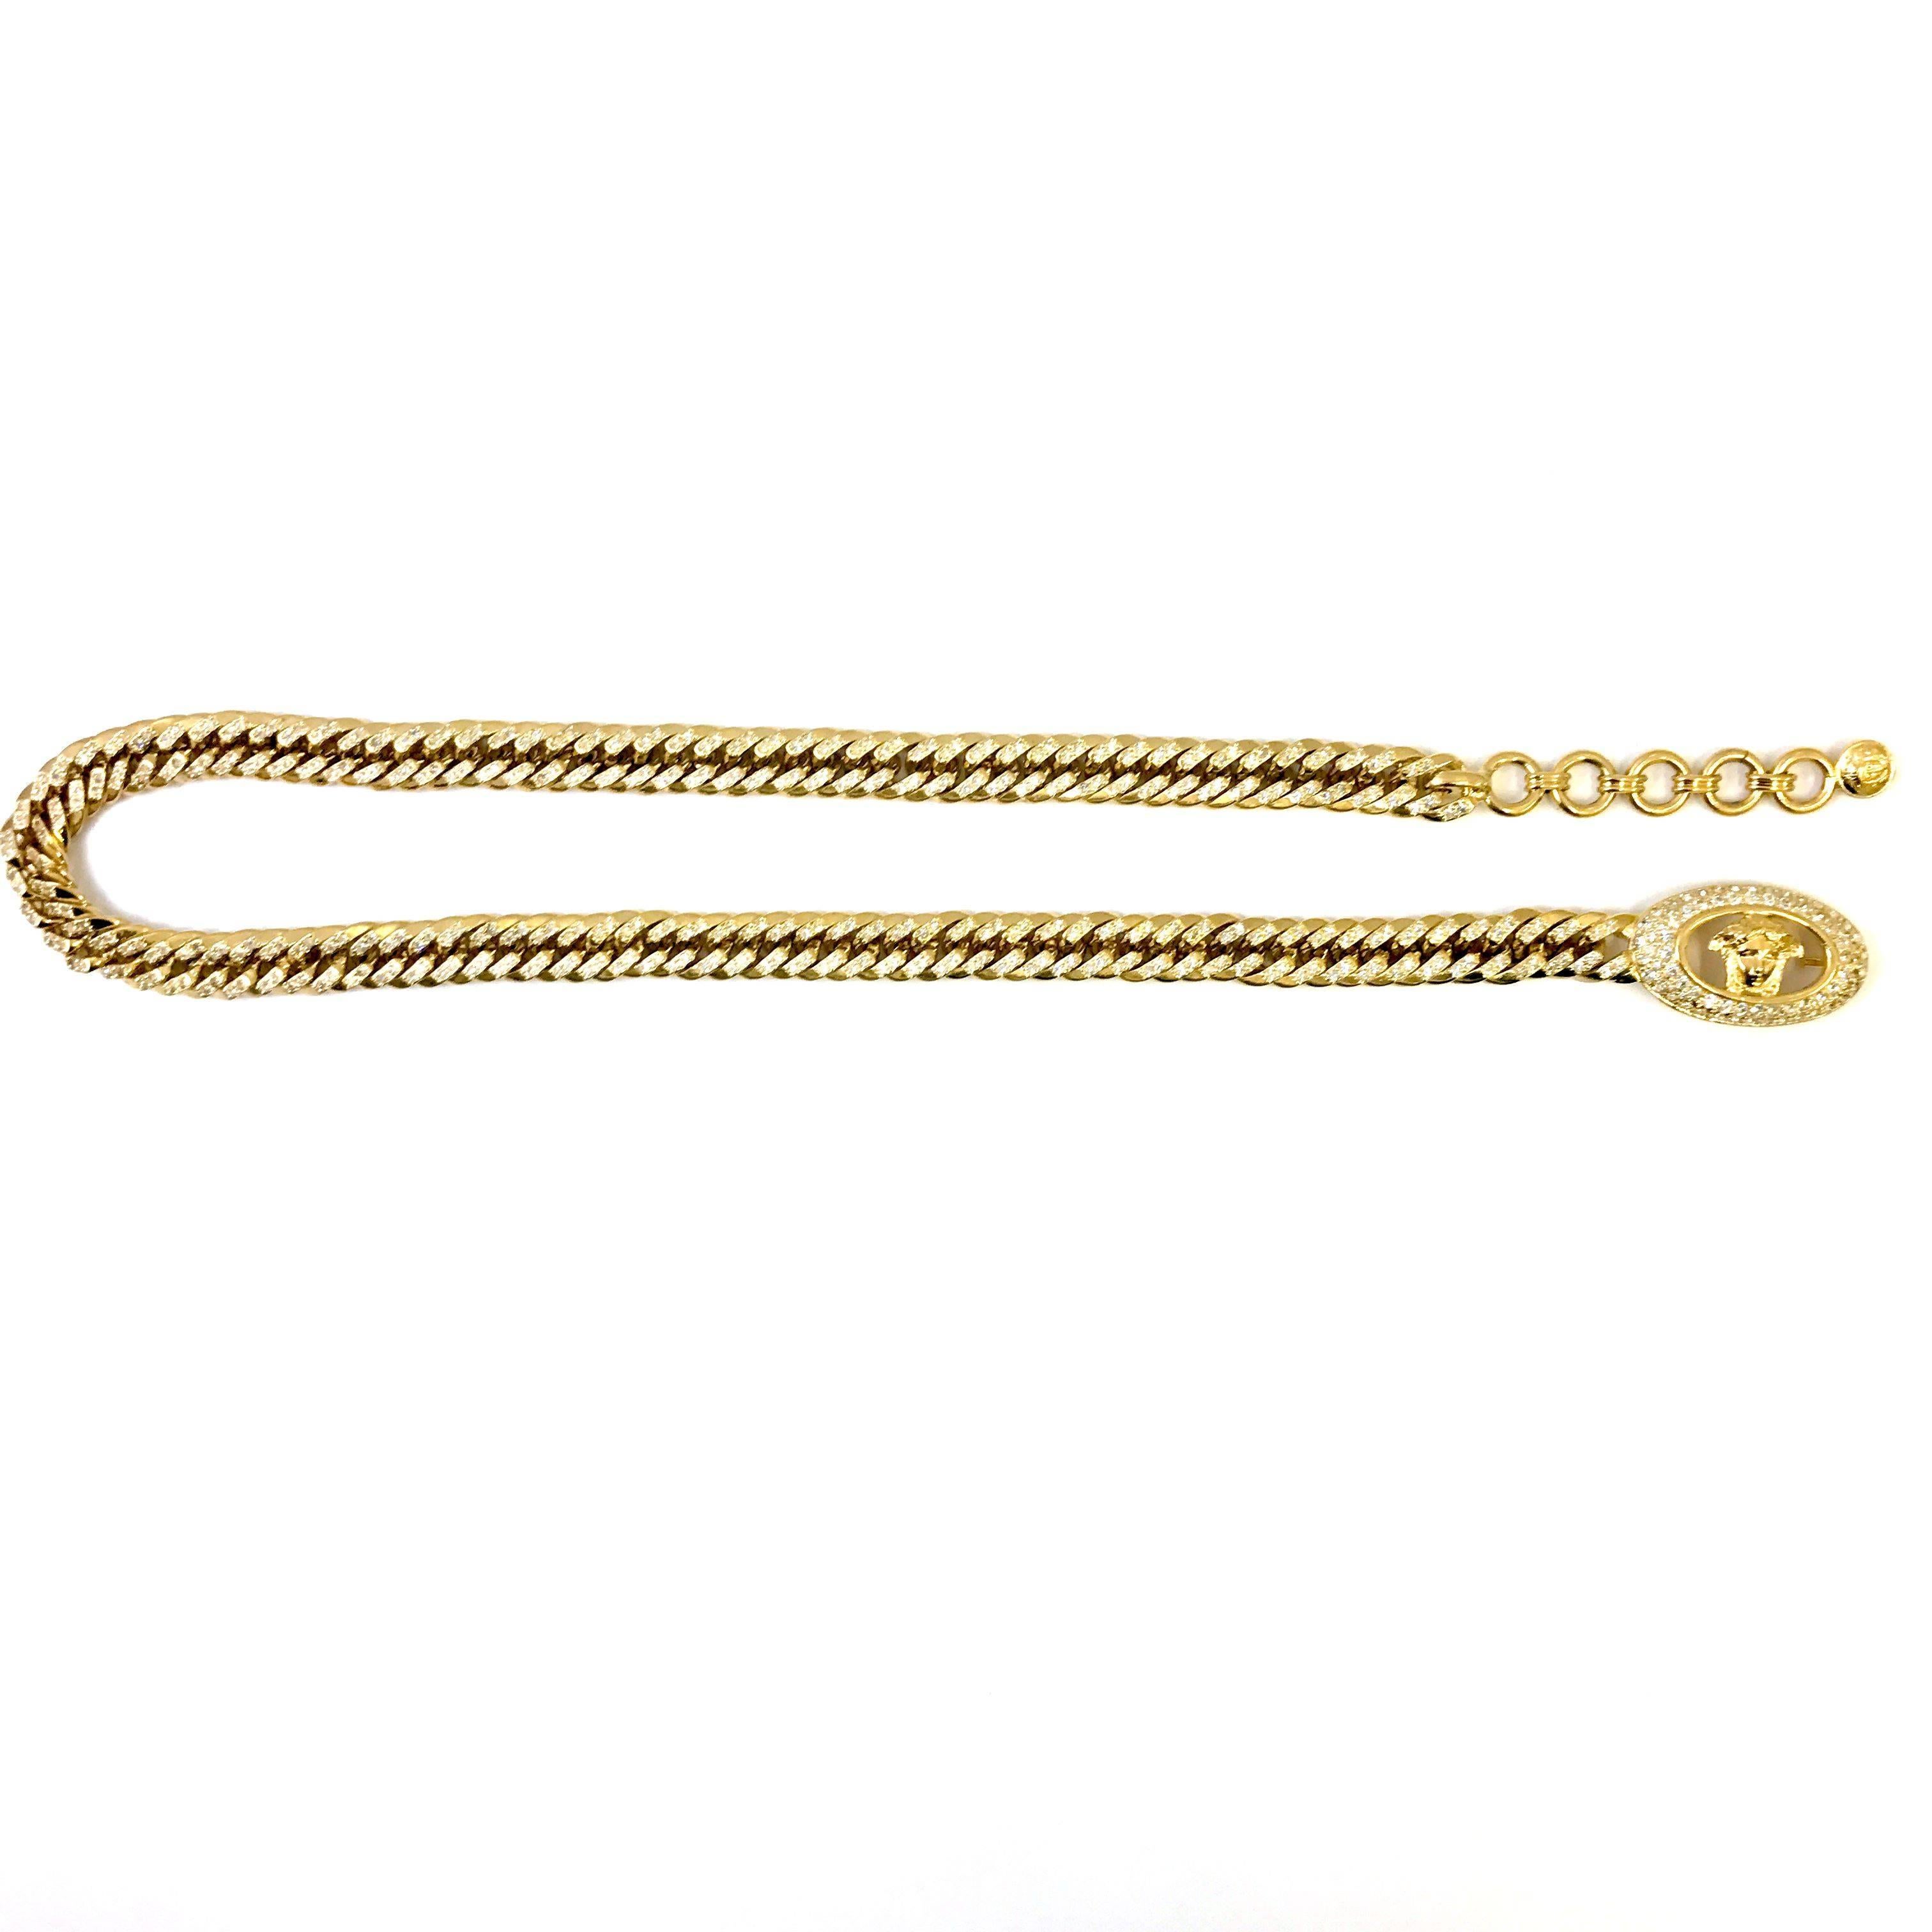 Cette ceinture Gianni Versace est fabriquée en métal doré de couleur or. Le style de la chaîne reflète l'ère des années 90 puisqu'il s'agit d'une chaîne en forme de boucle. La chaîne de la ceinture est recouverte de strass transparents qui